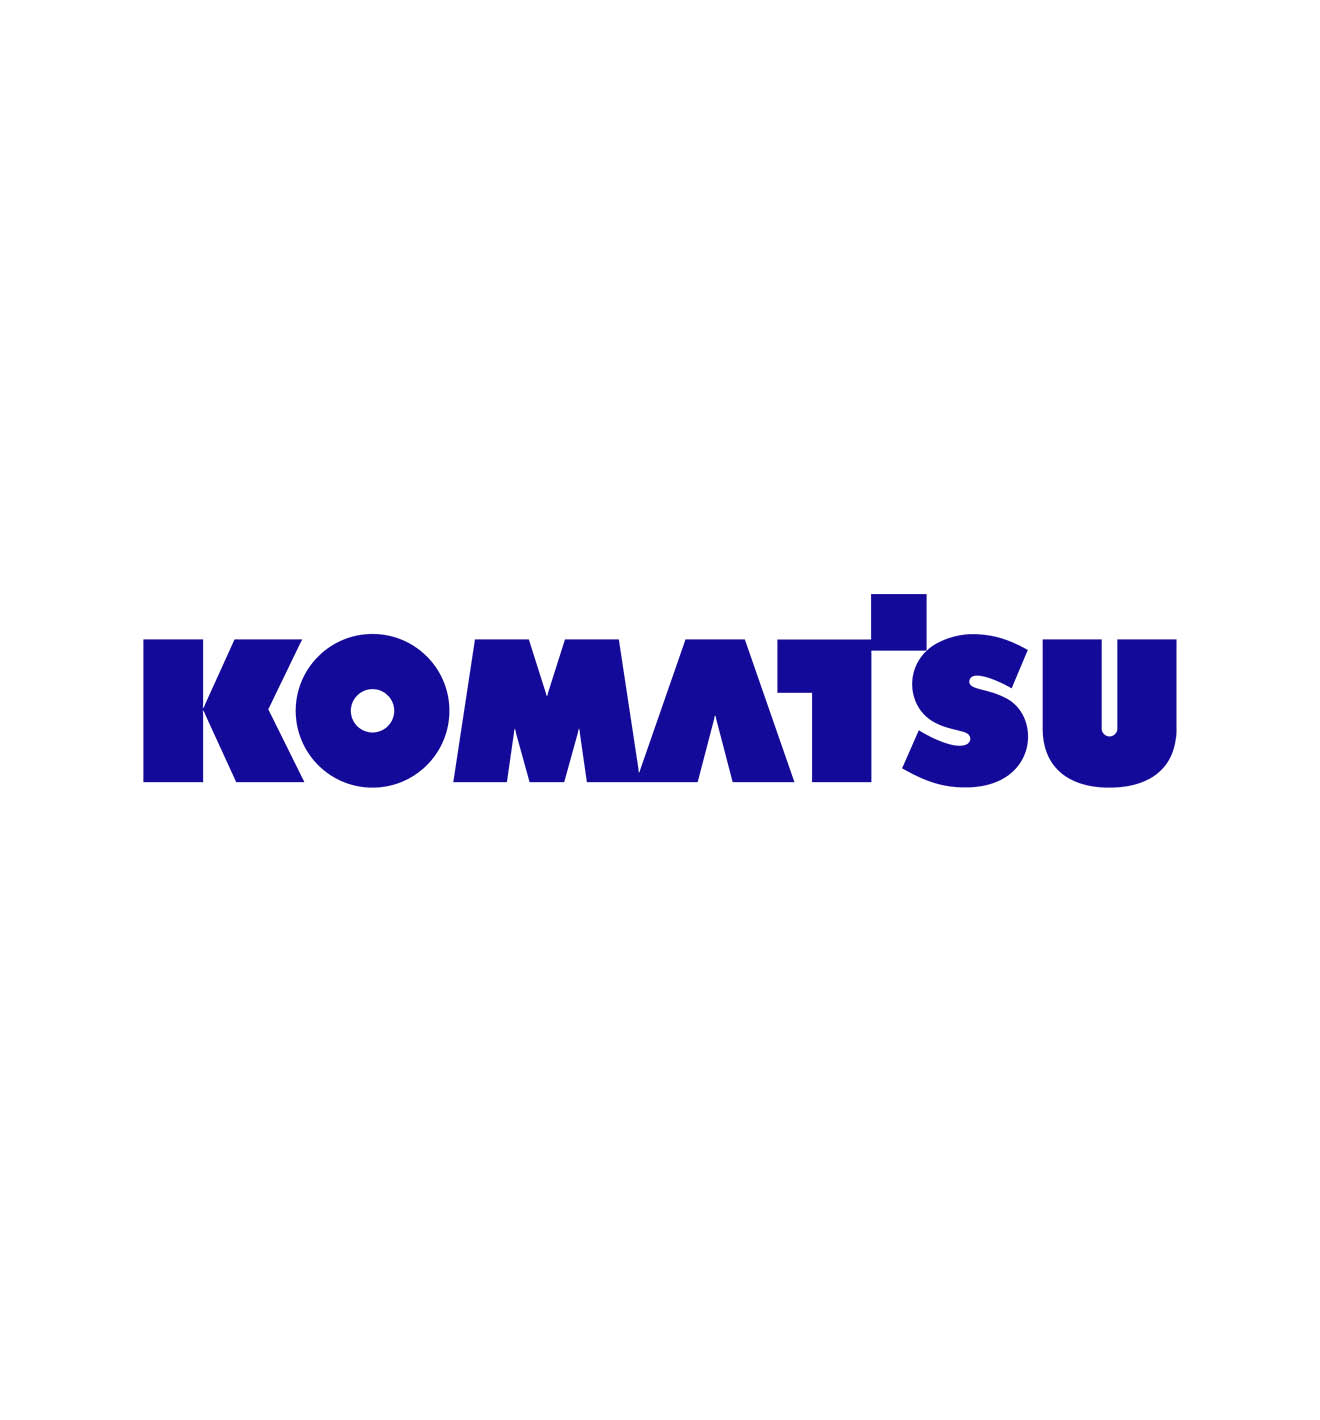 تقدم شركة Komatsu المساعدة للأشخاص المتضررين من الزلازل المغربية والفيضانات في ليبيا